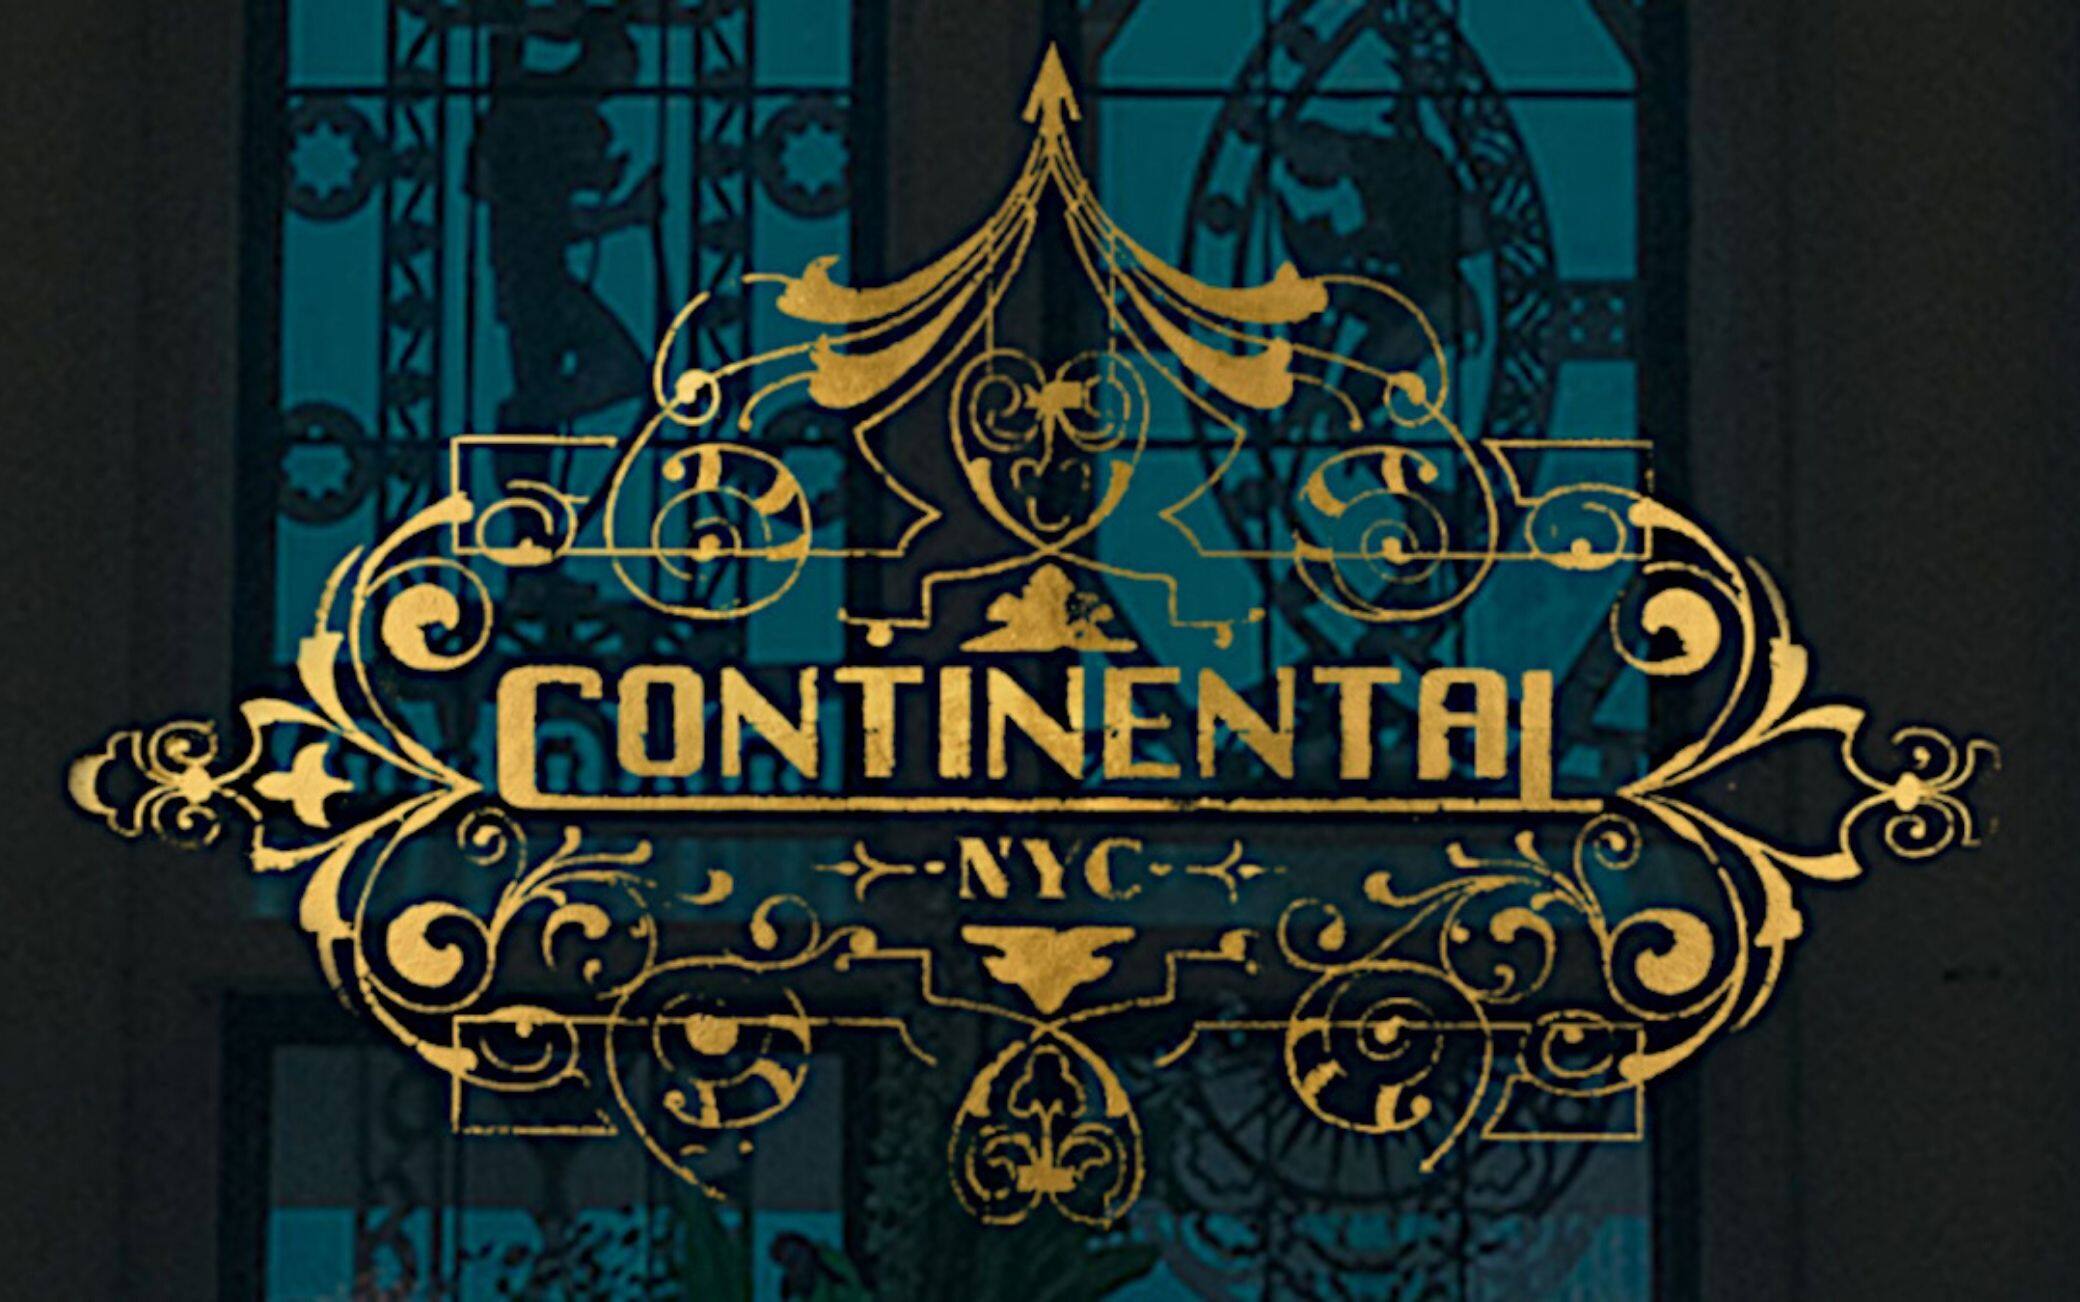 La recensione del primo episodio di The Continental